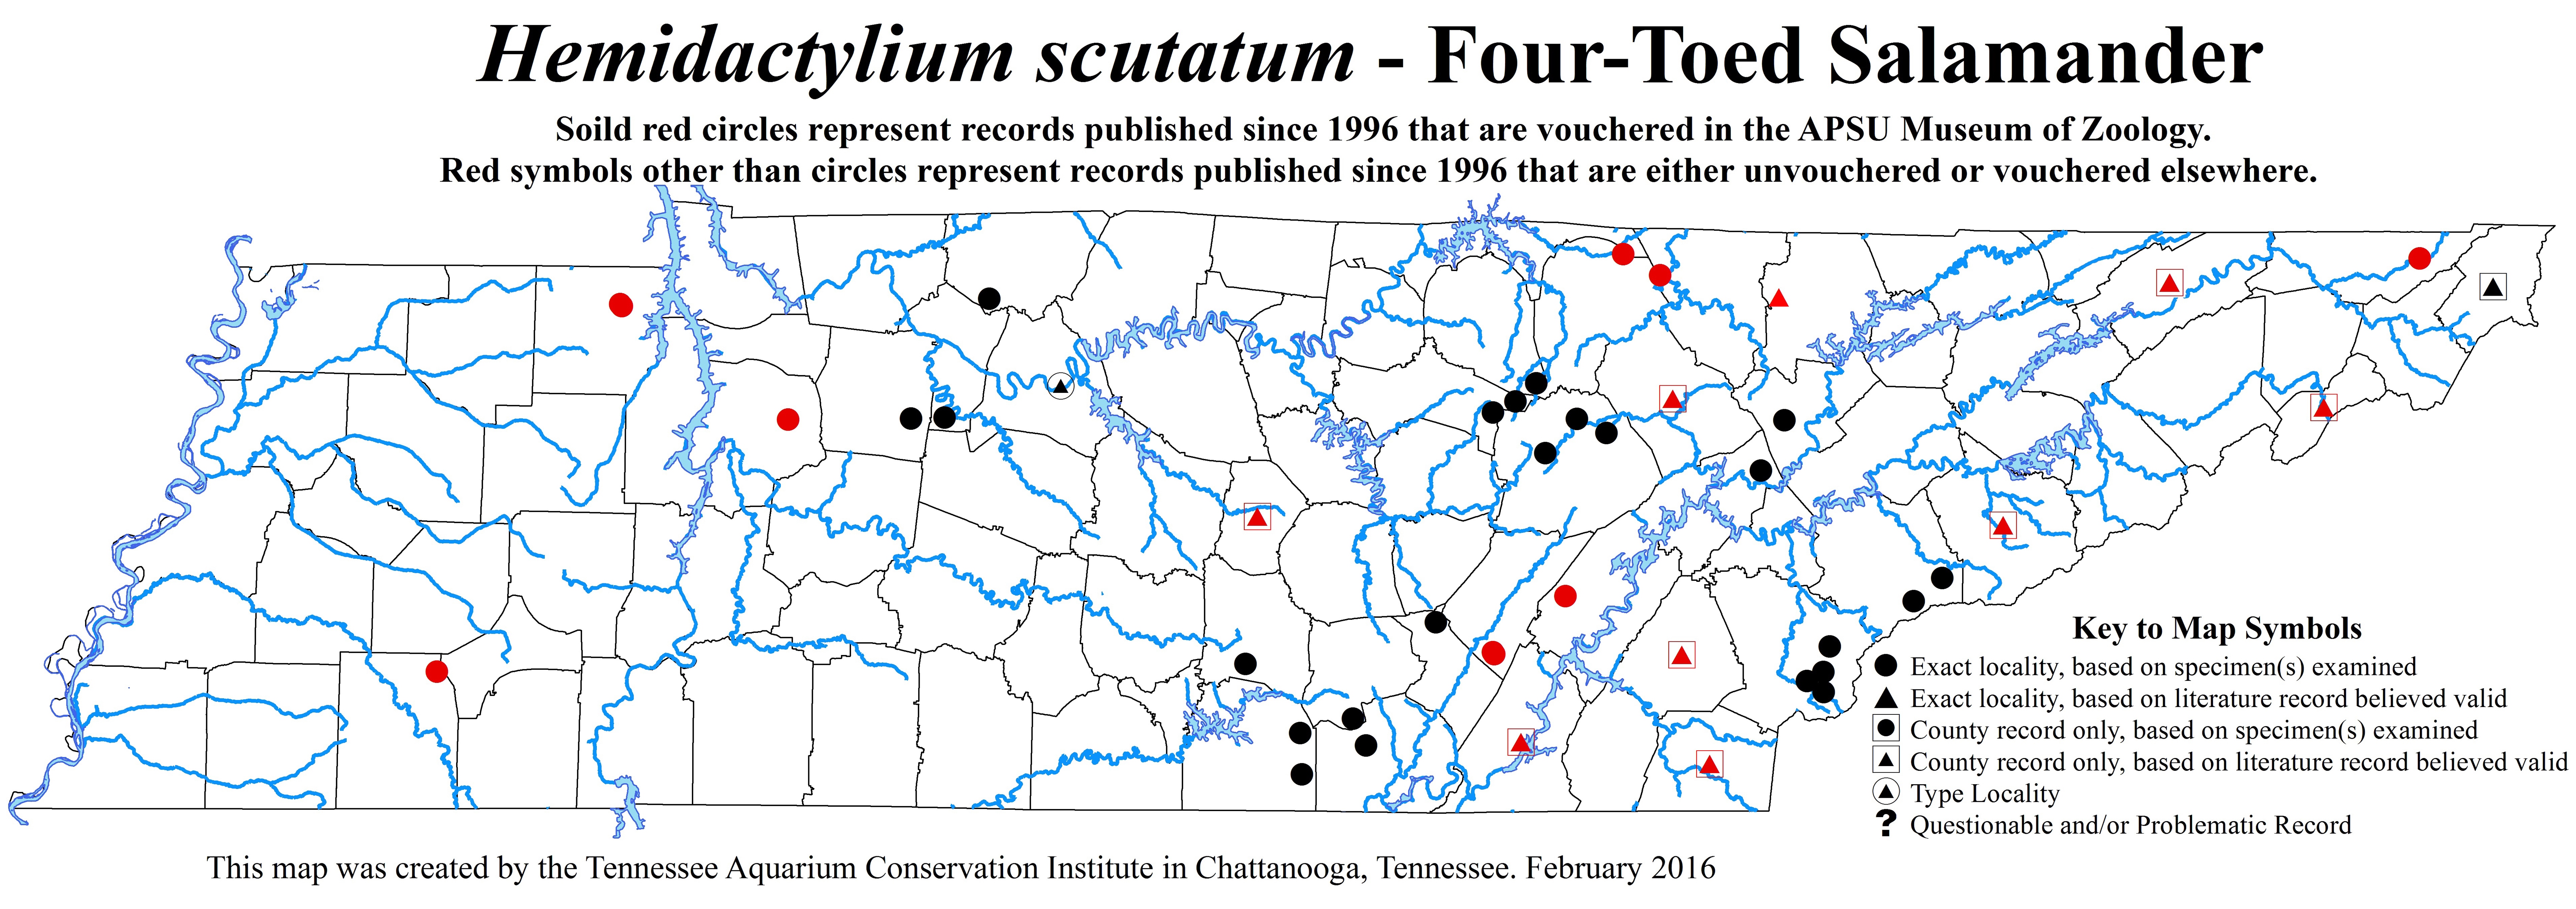 New Distribution Map - Hemidactylium scutatum (Temminck and Schlegel in Von Siebold) - Four-Toed Salamander